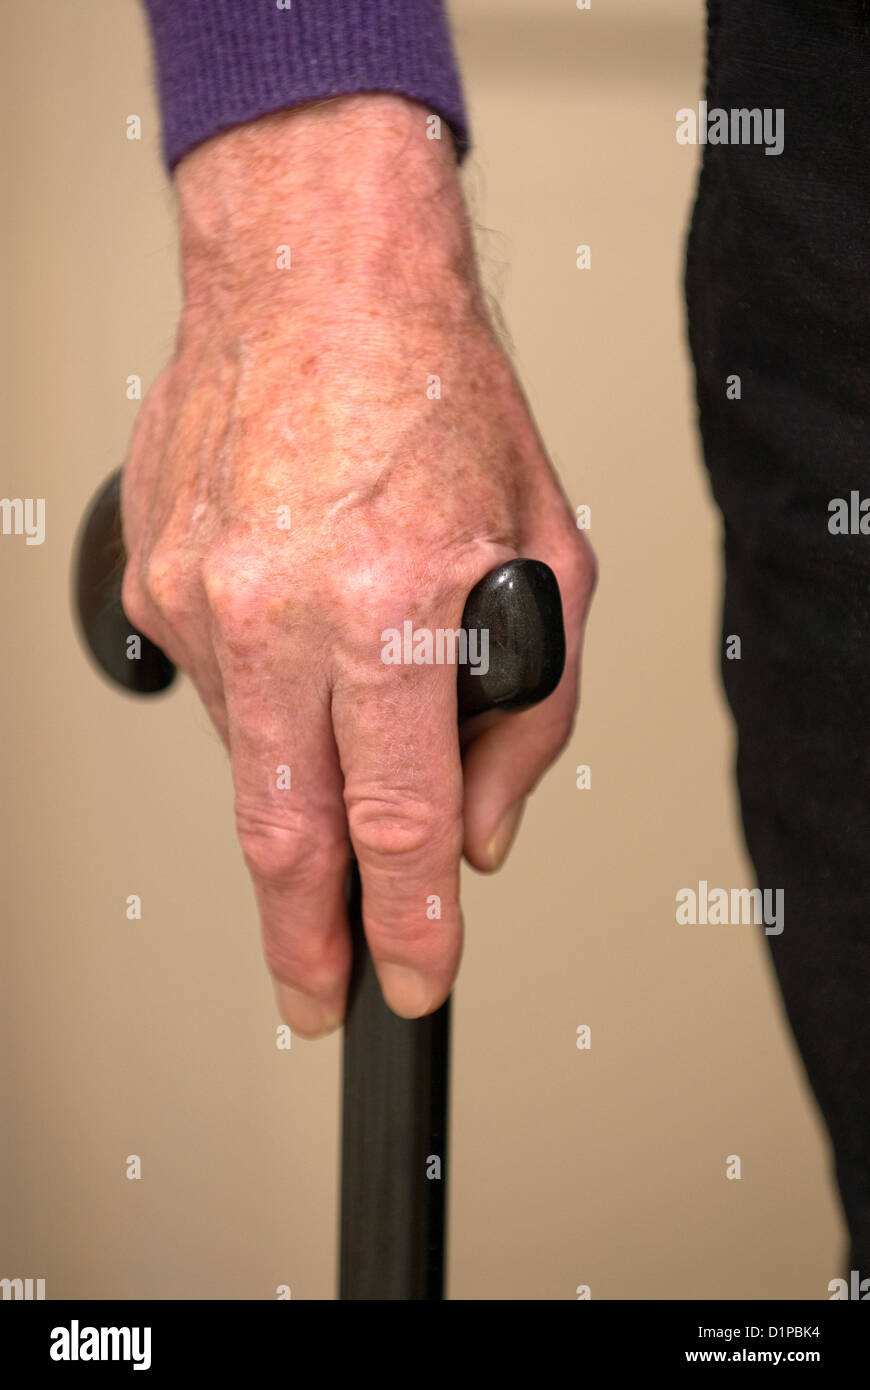 Homme avec handicap physique holding bâton de marche, Londres, Royaume-Uni. permission du modèle (Mr) de droit. Banque D'Images